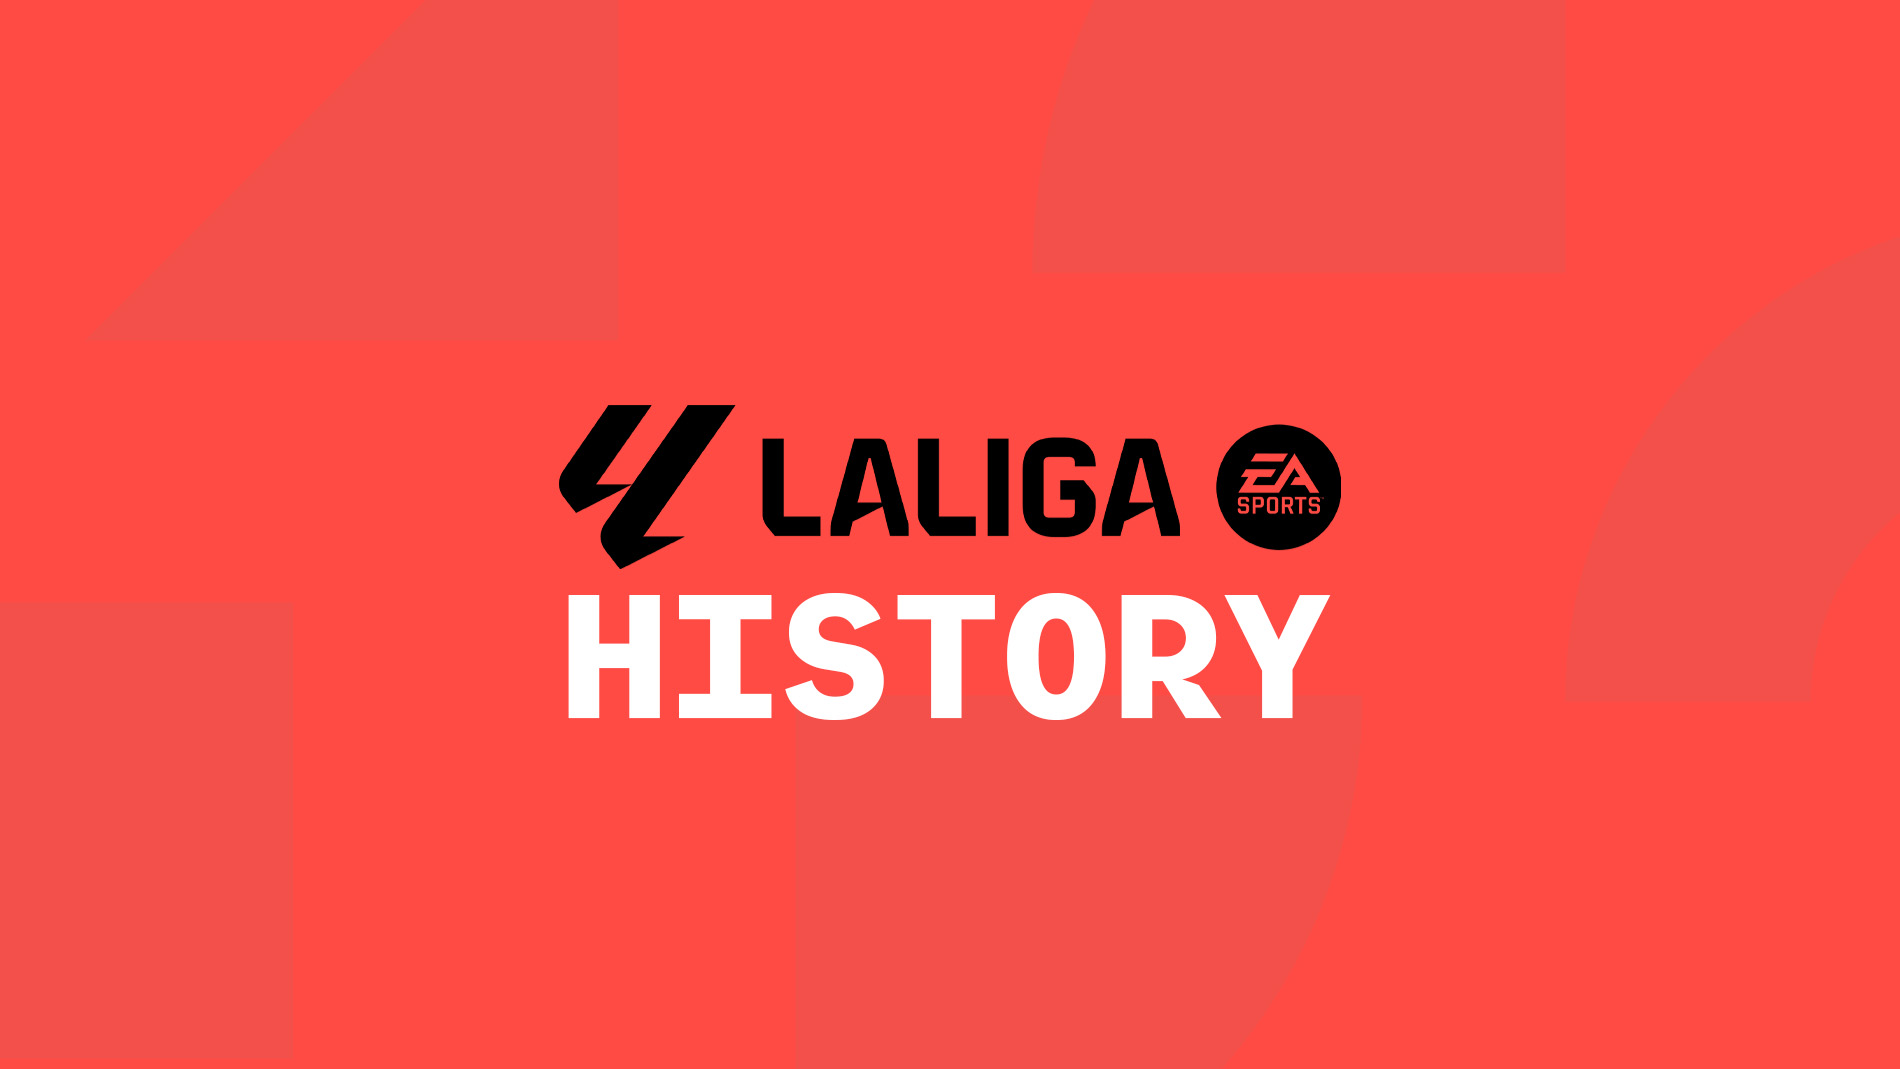 LaLiga History